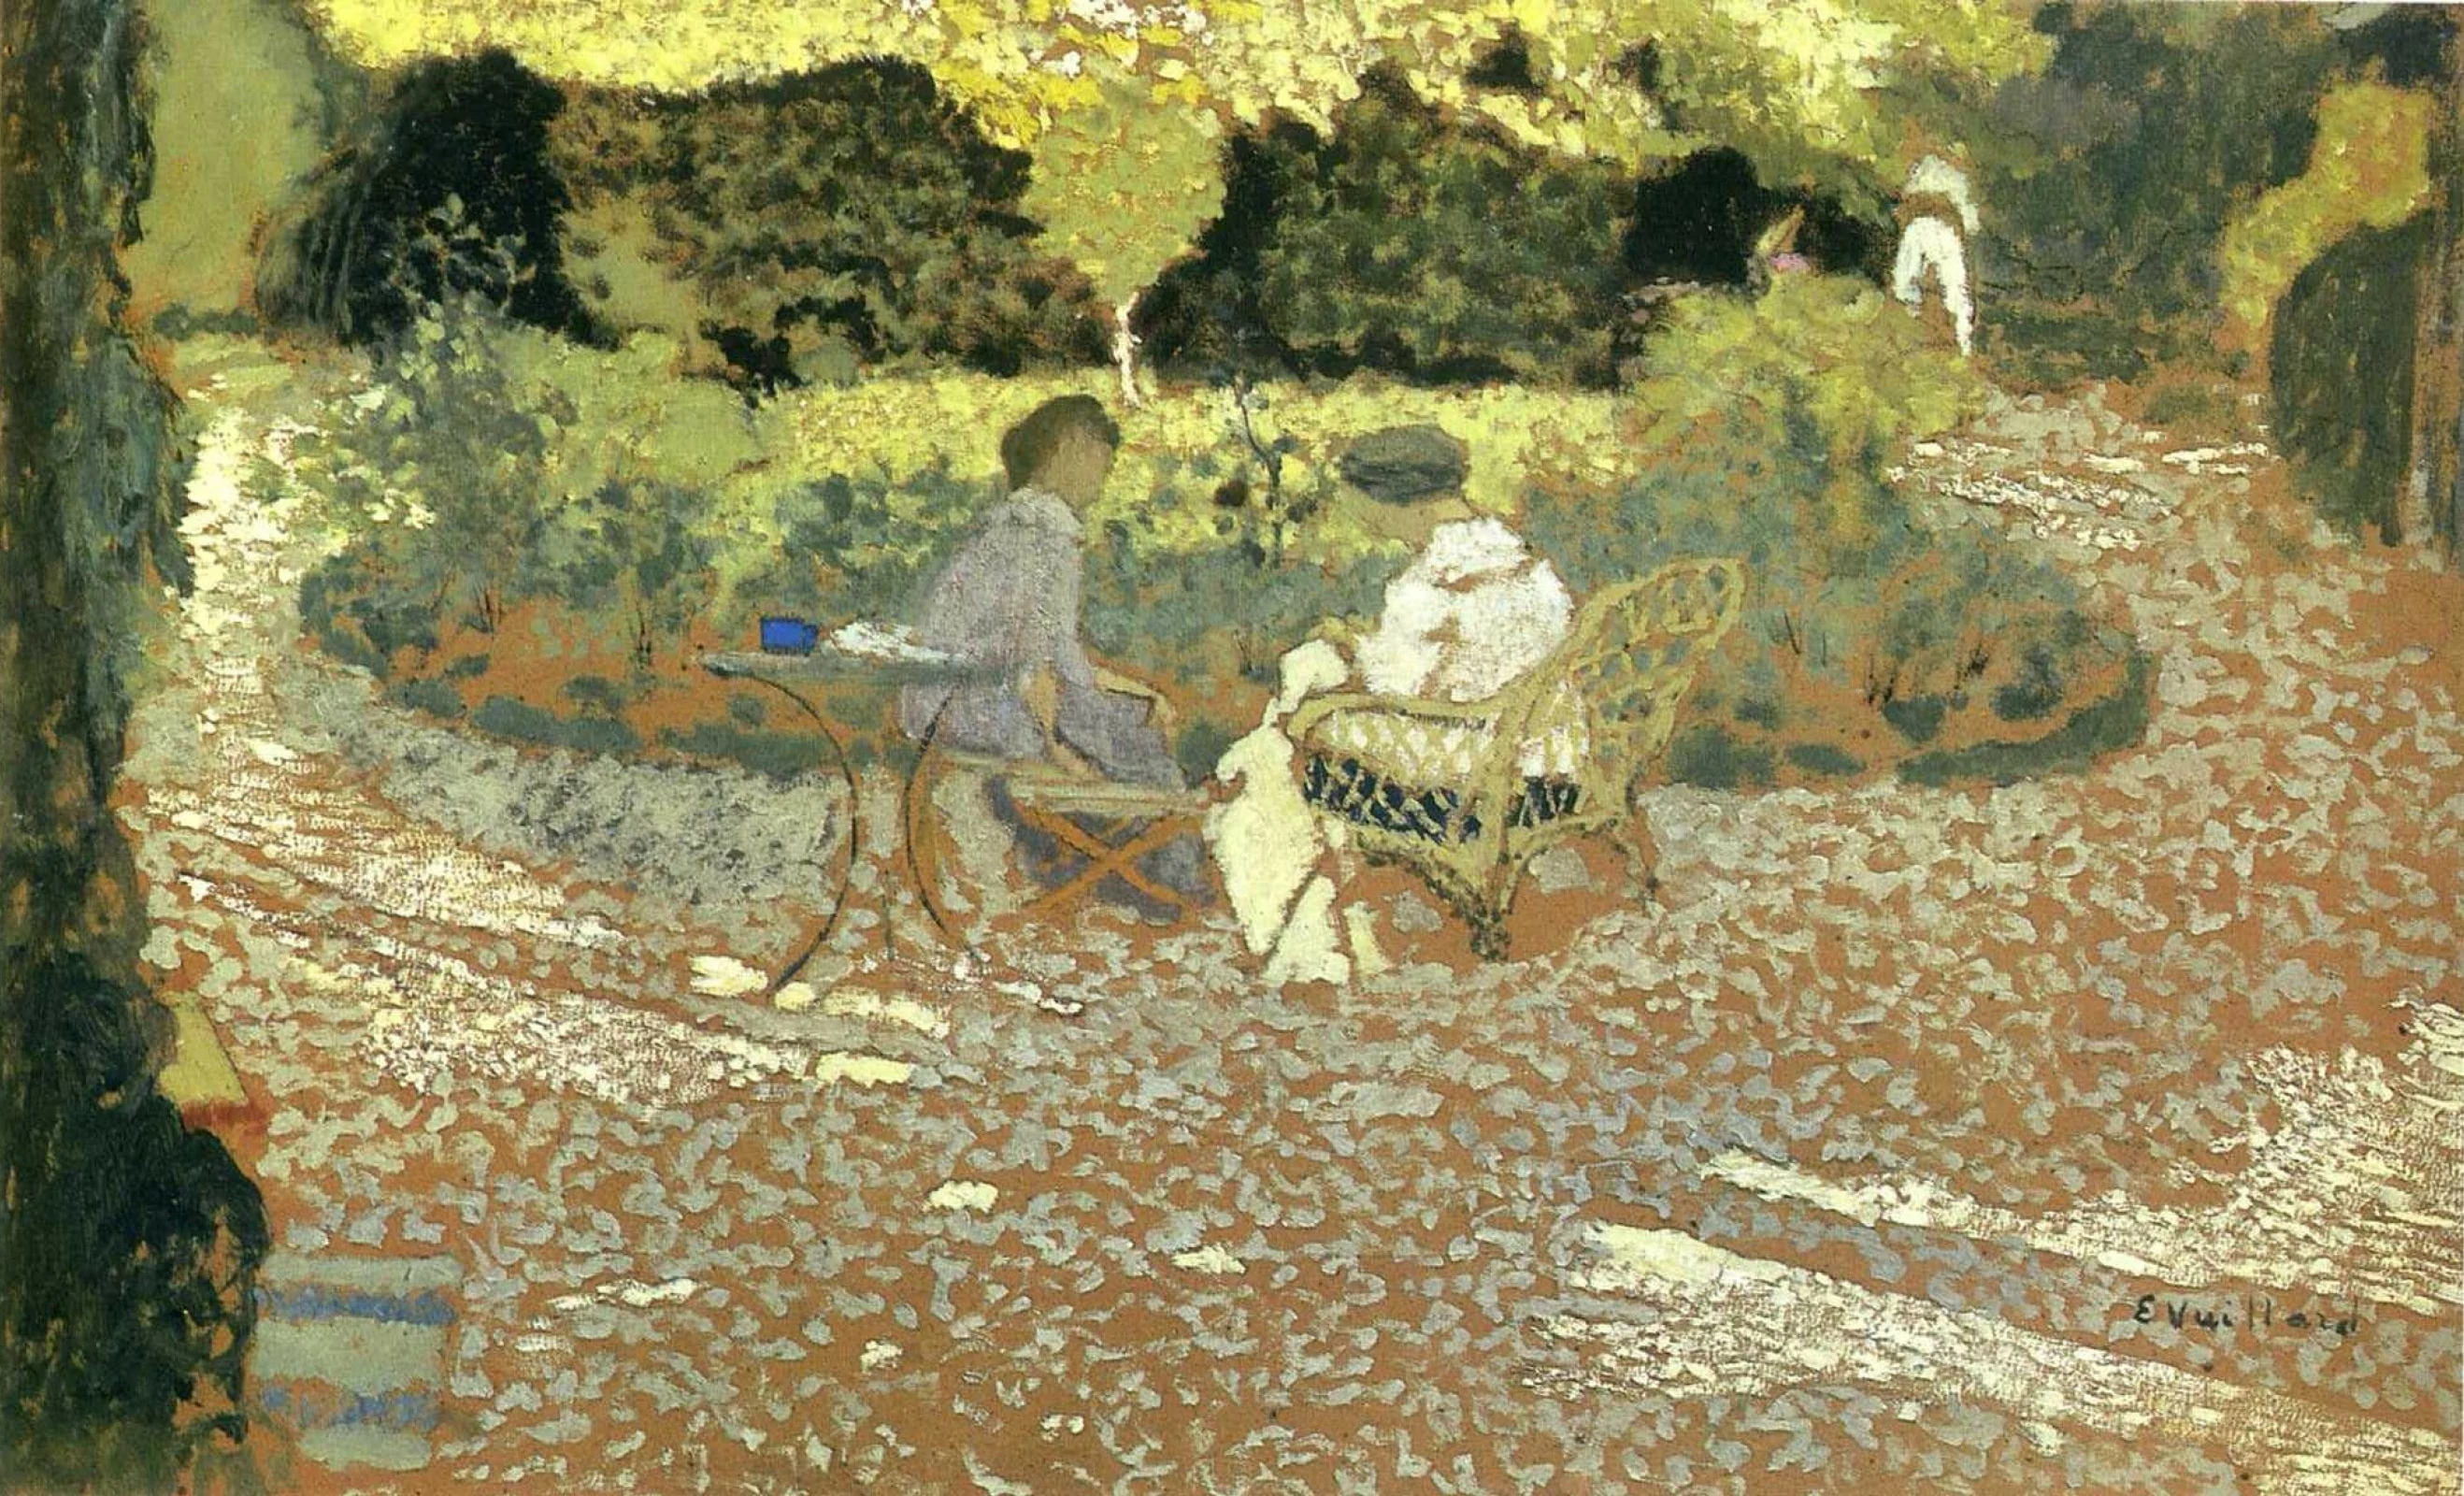 In the Garden, Édouard Vuillard